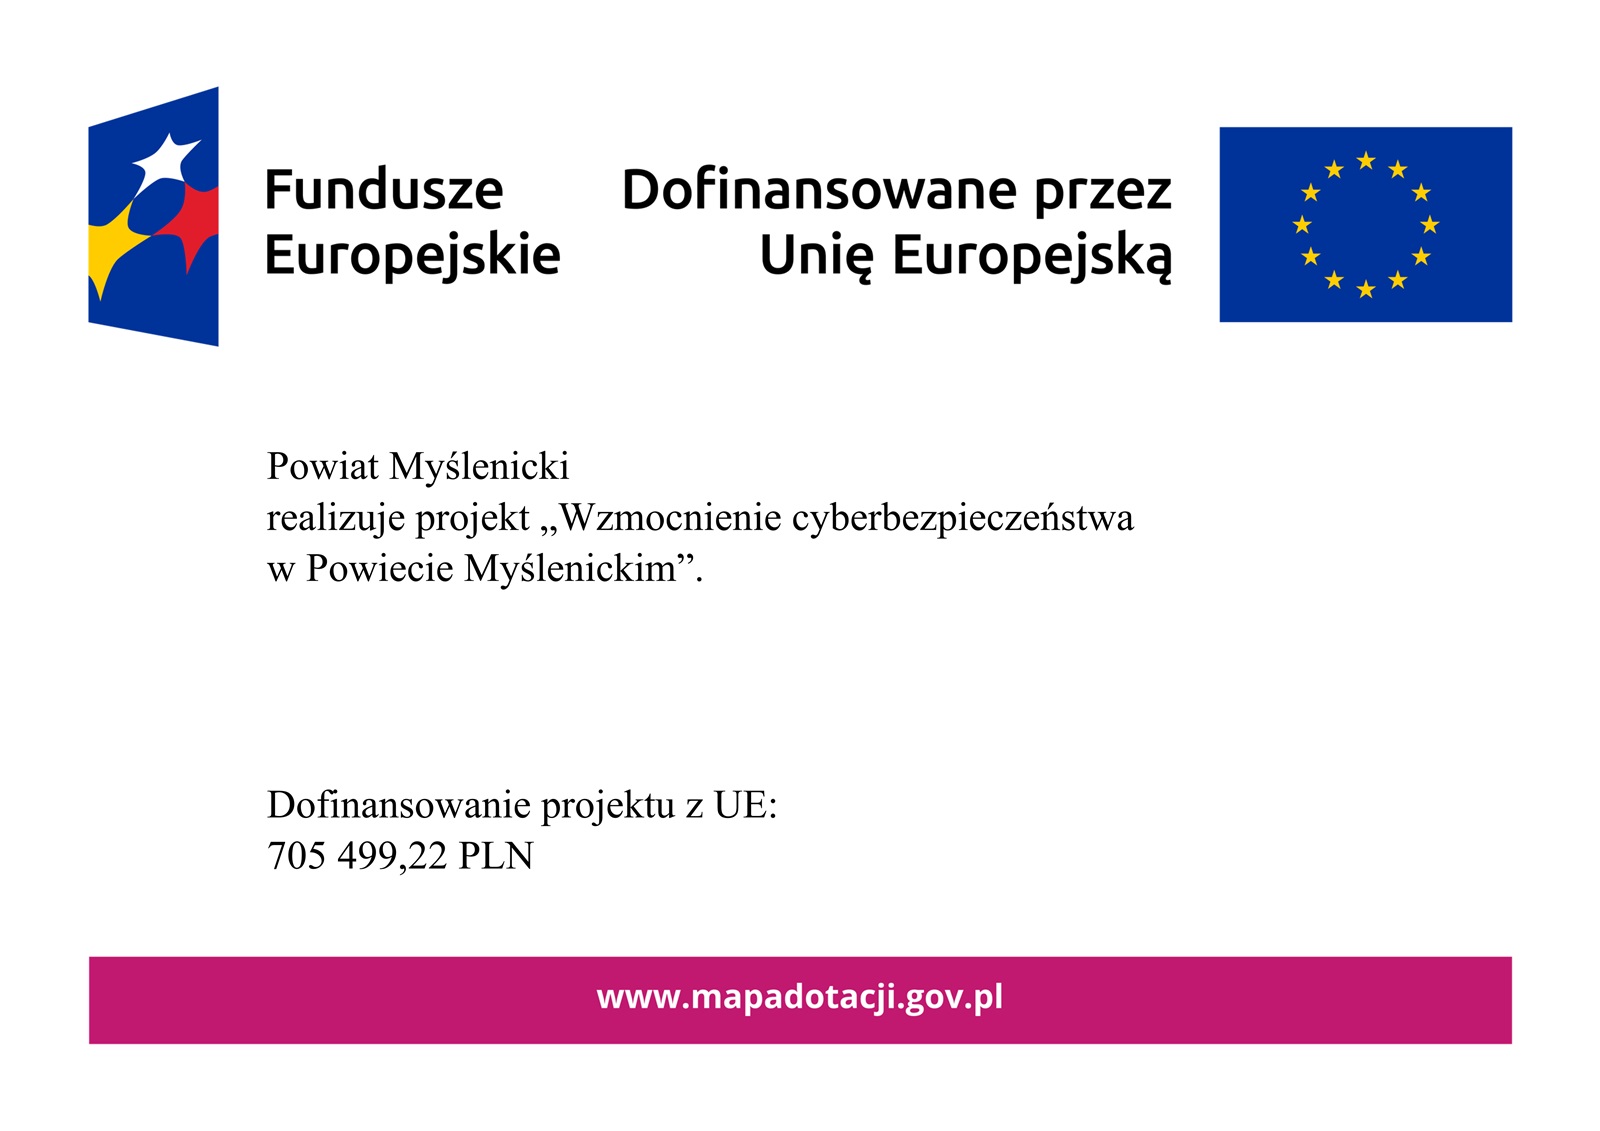 Plakat informujący o kwocie dofinansowania z UE otrzymanego przez Powiat Myślenicki na realizację projektu „Wzmocnienie cyberbezpieczeństwa w Powiecie Myślenickim”, zawierający znak Funduszy Europejskich i Unii Europejskiej  